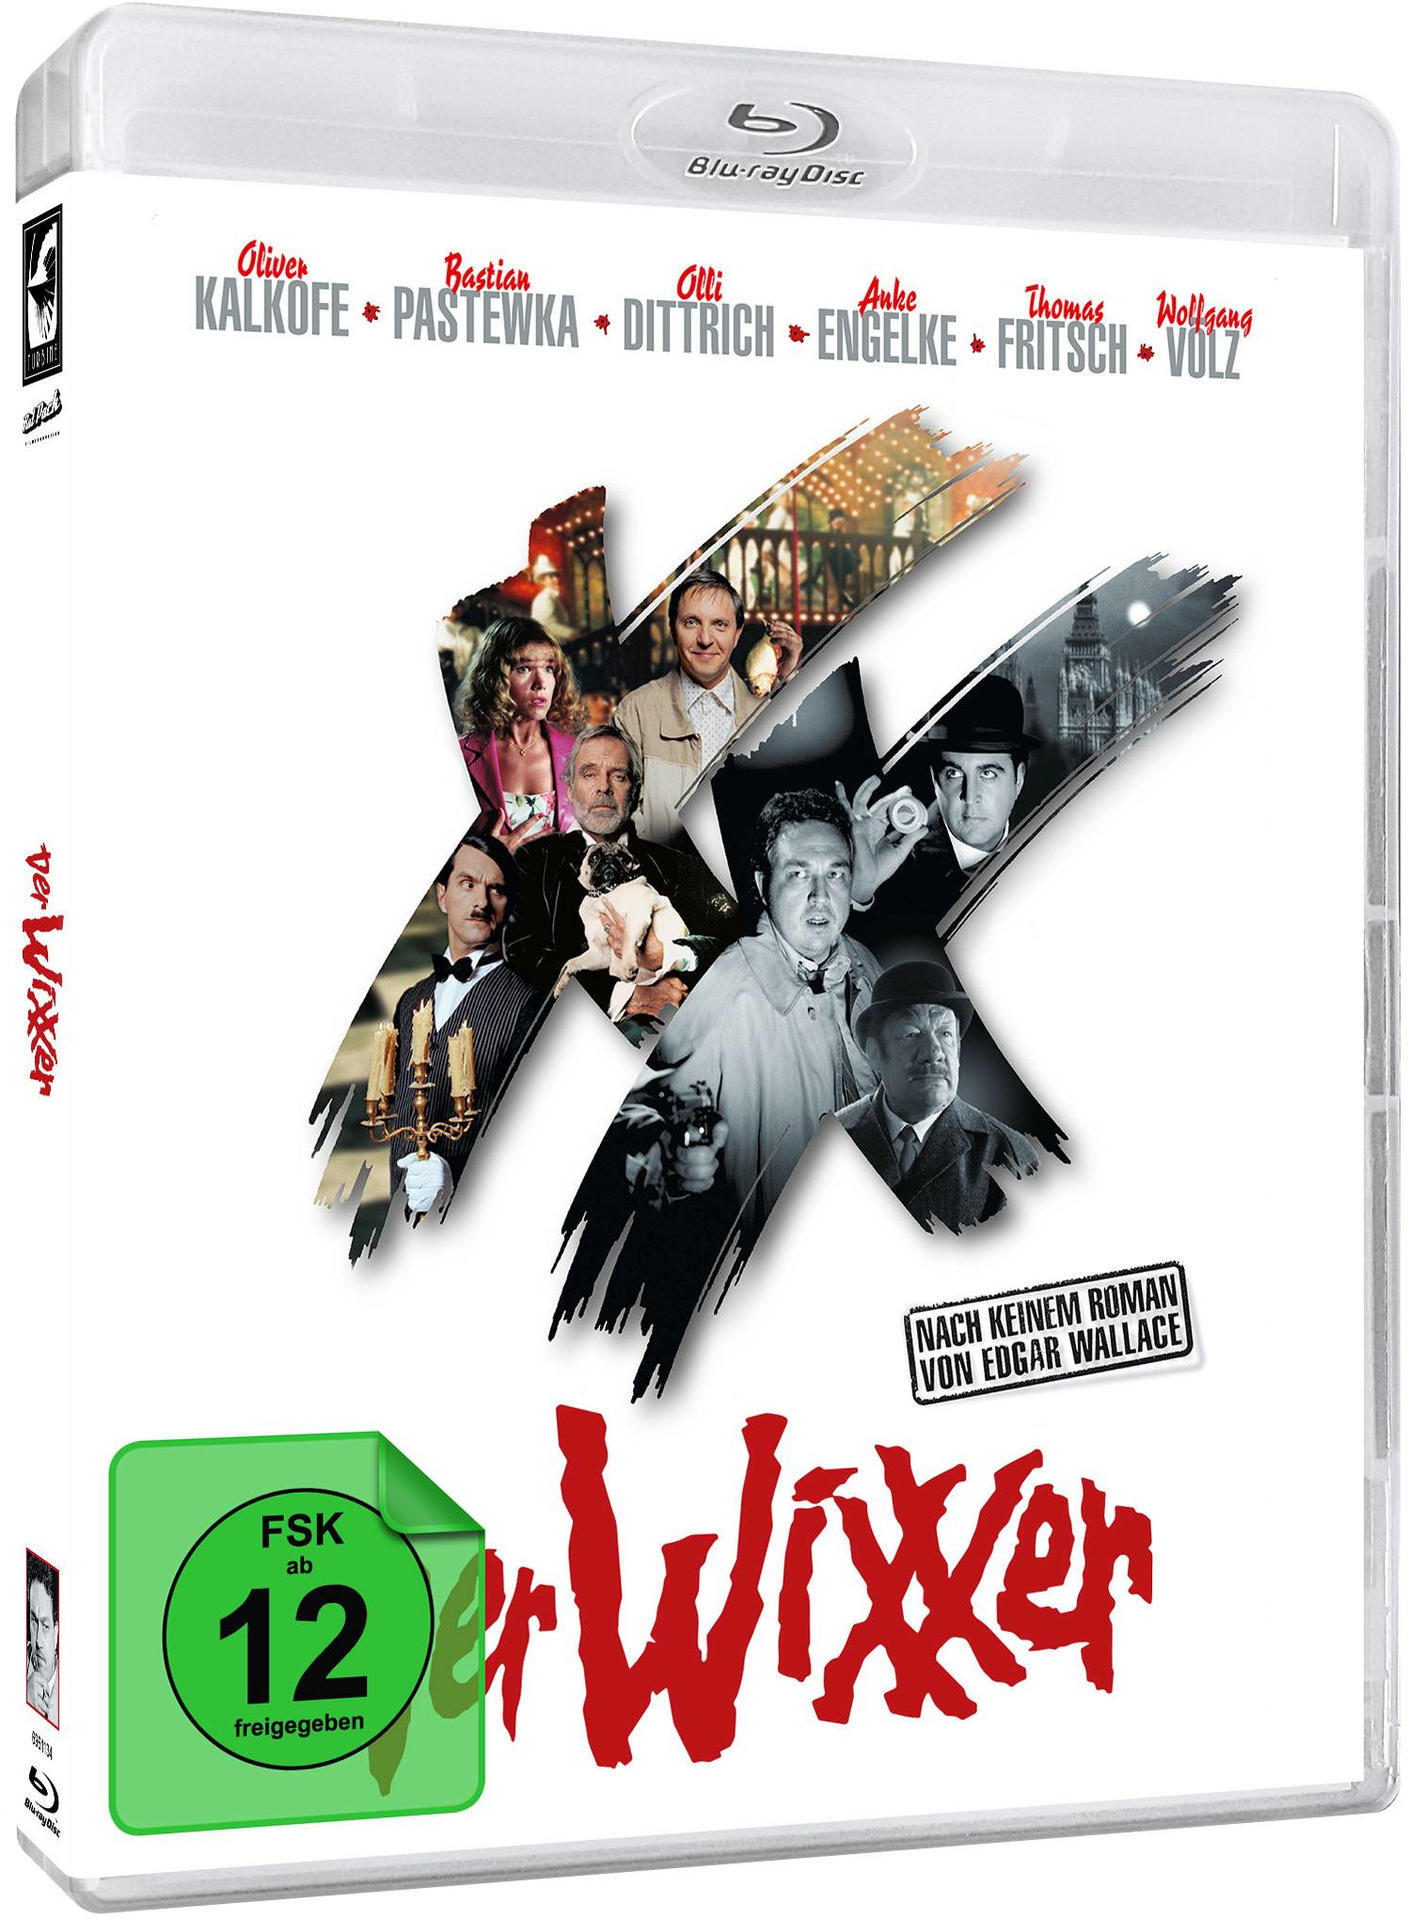 Der WiXXer Blu-ray